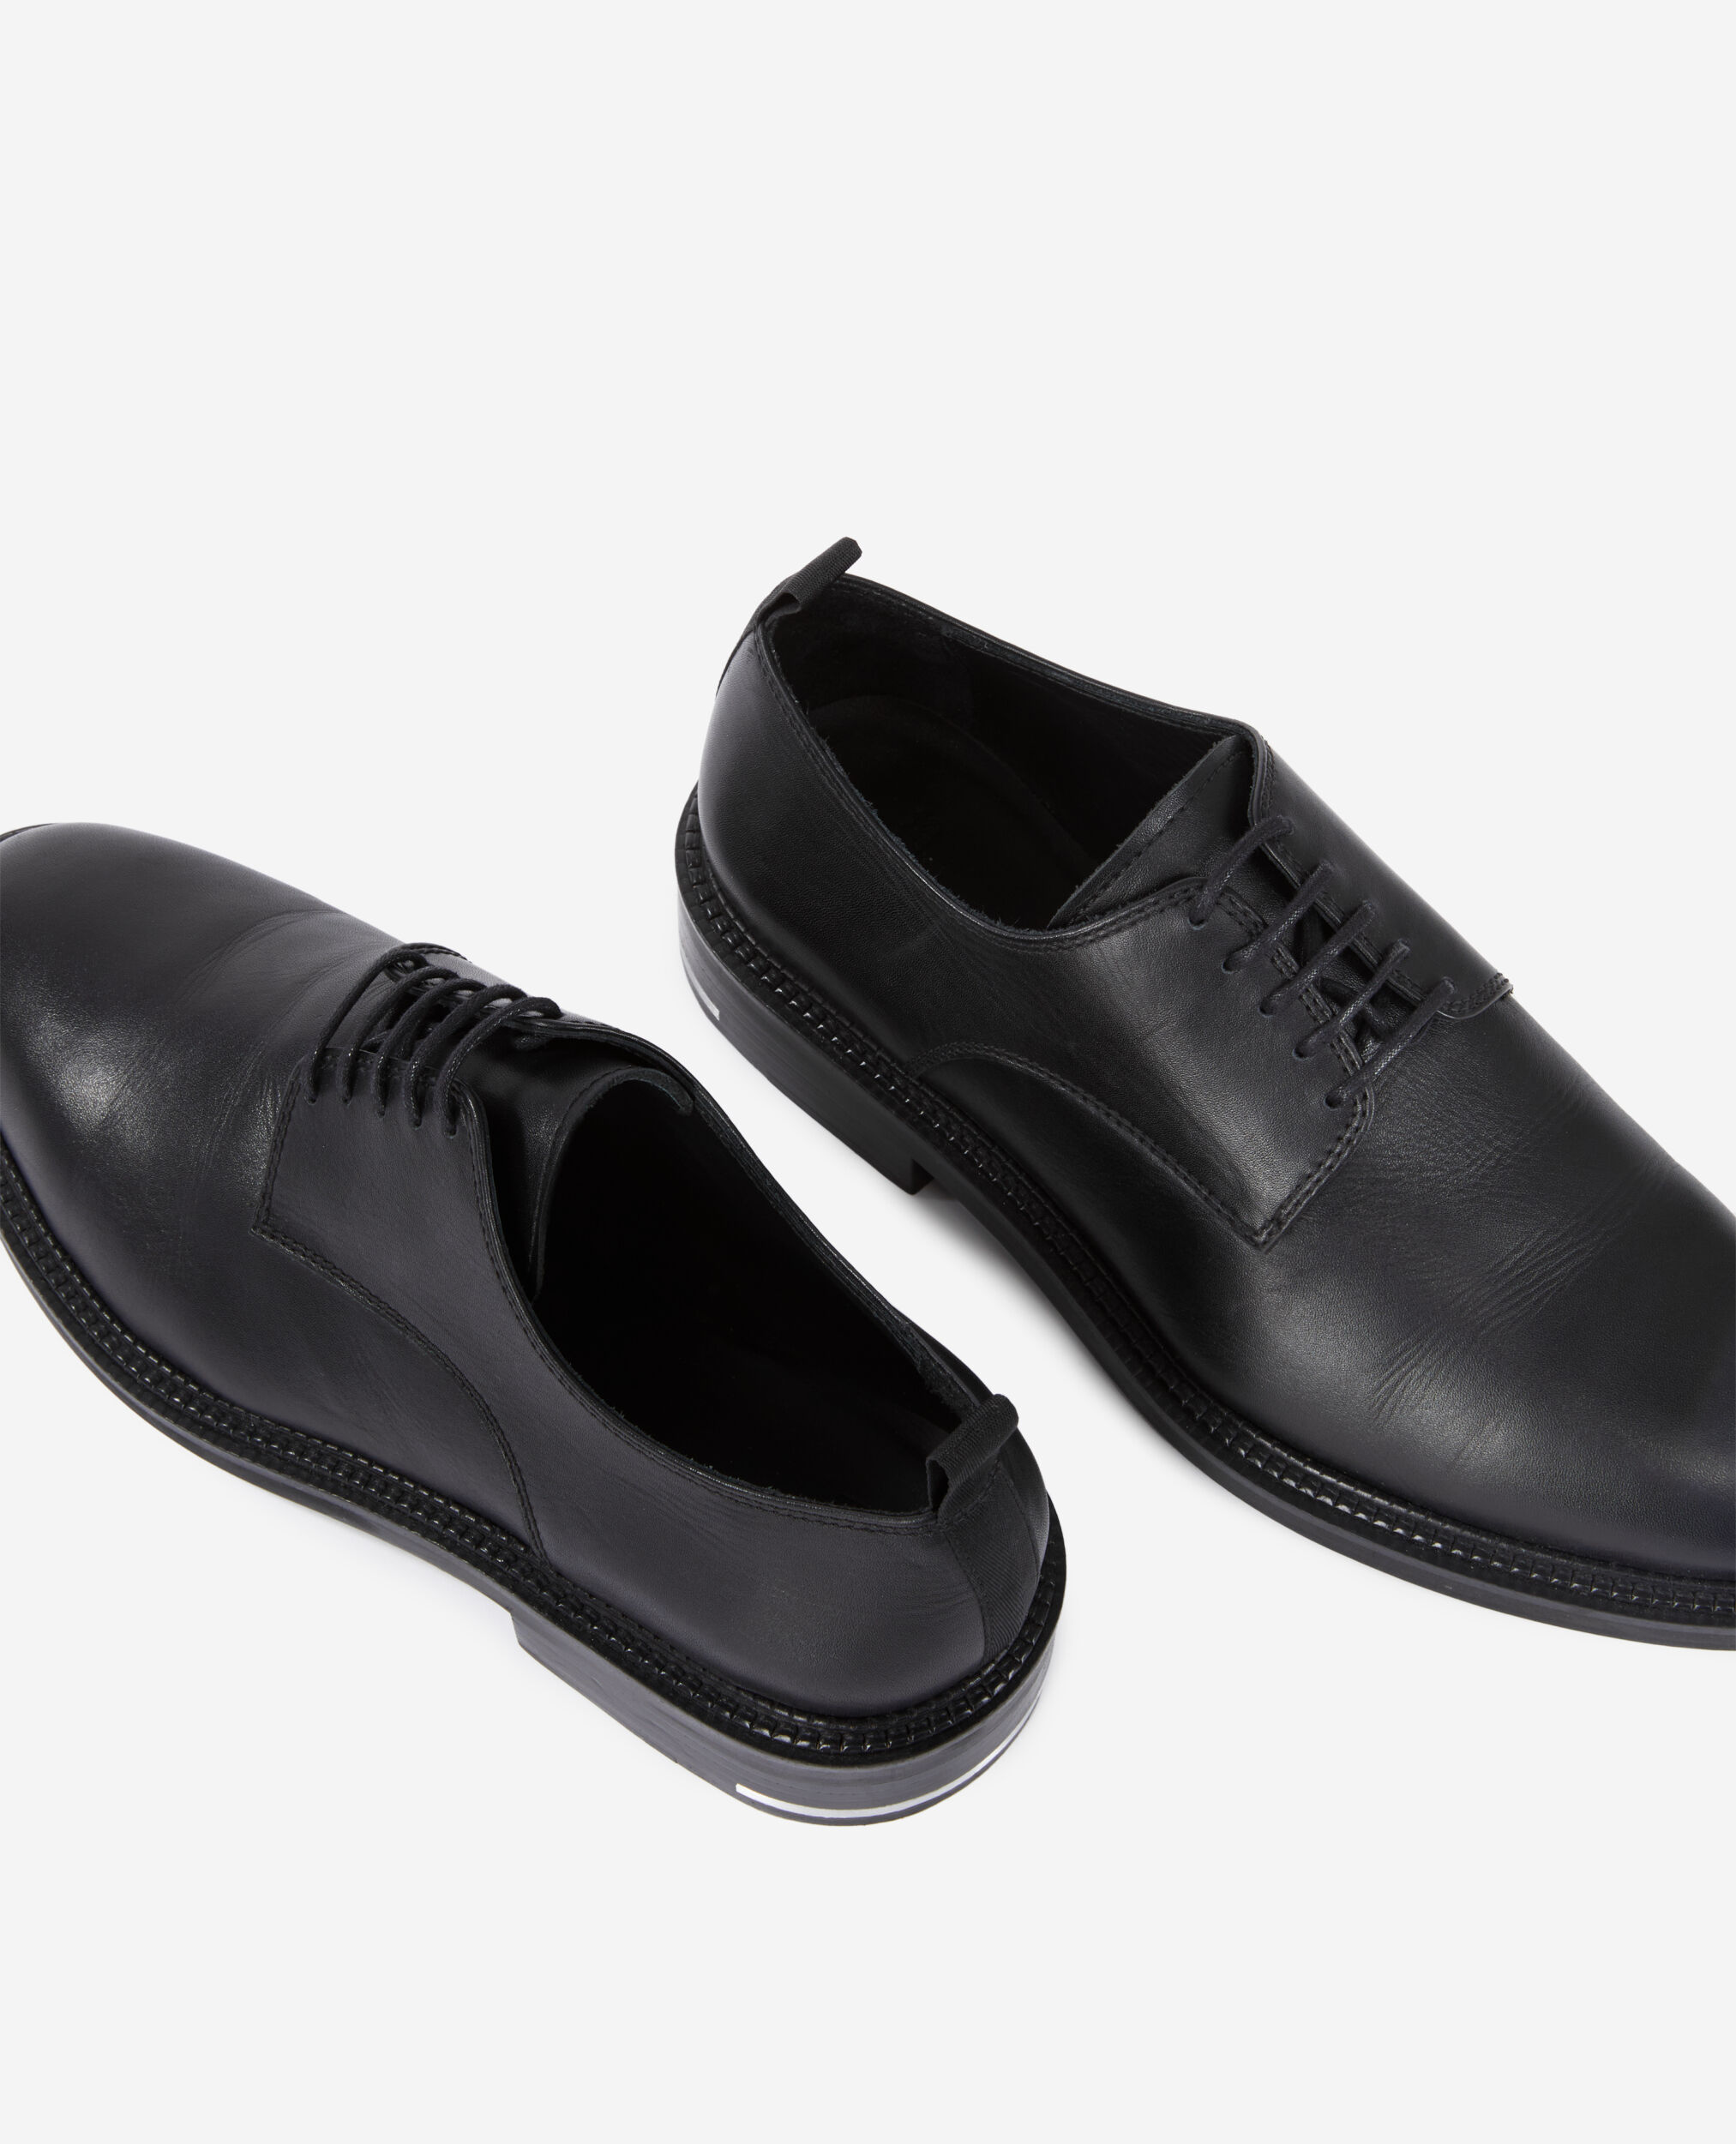 Chaussures à lacets en cuir noir, BLACK, hi-res image number null